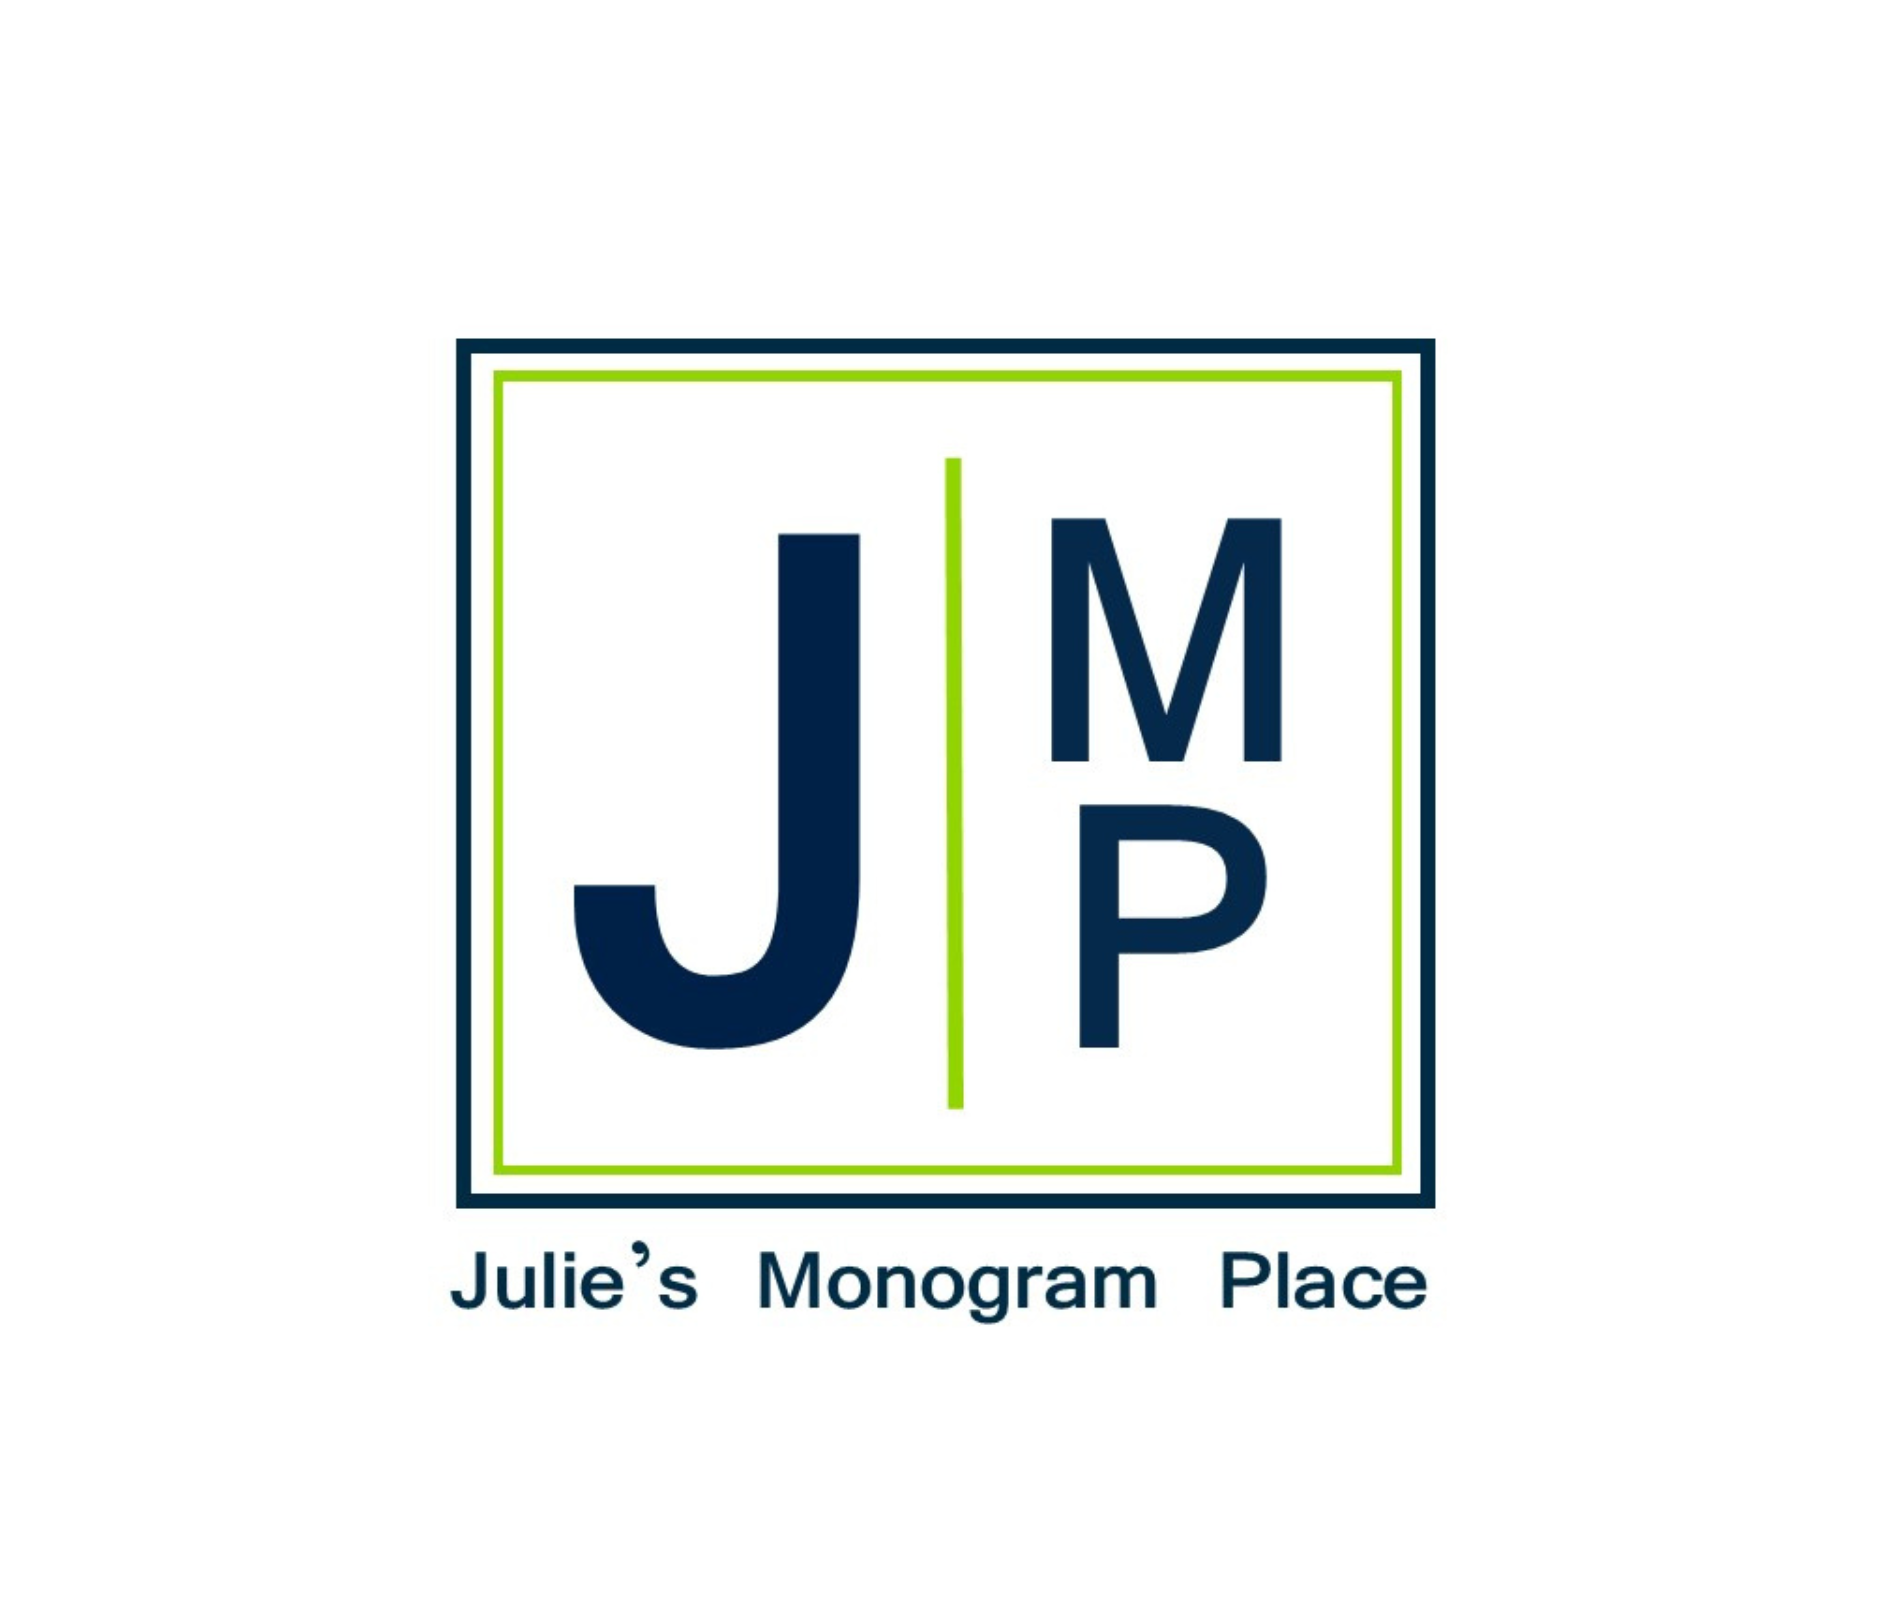 Julie's Monogram Place